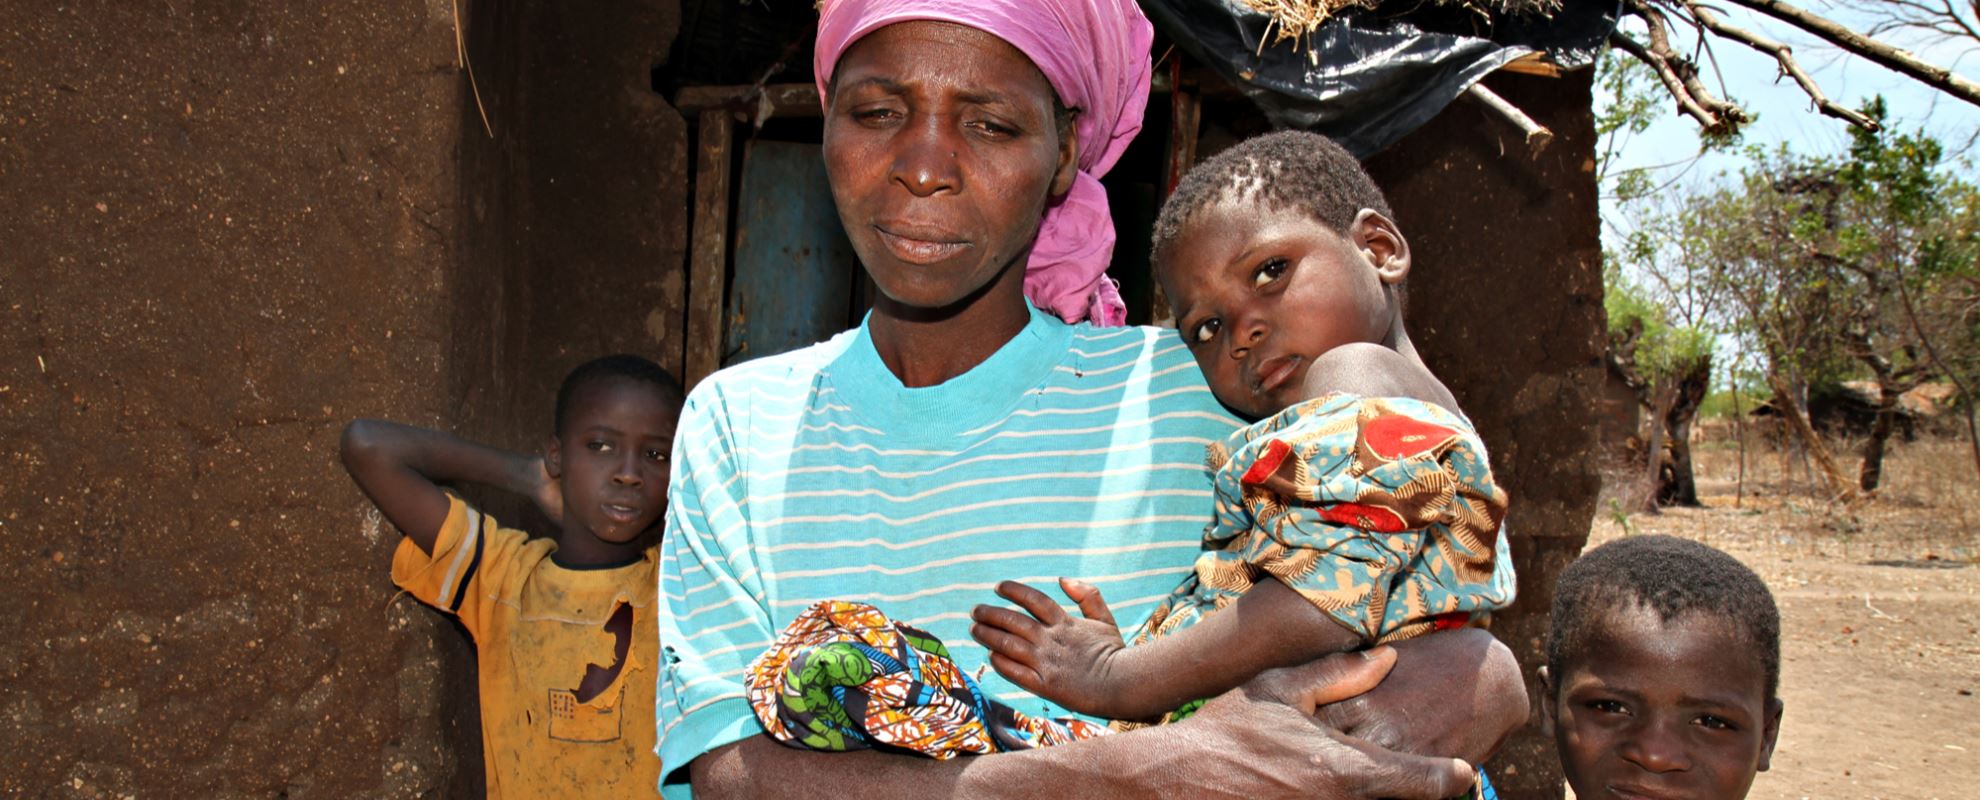 I 2011 var Manasha og de seks barna hennes i en svært vanskelig situasjon. Foto: SOS-barnebyer